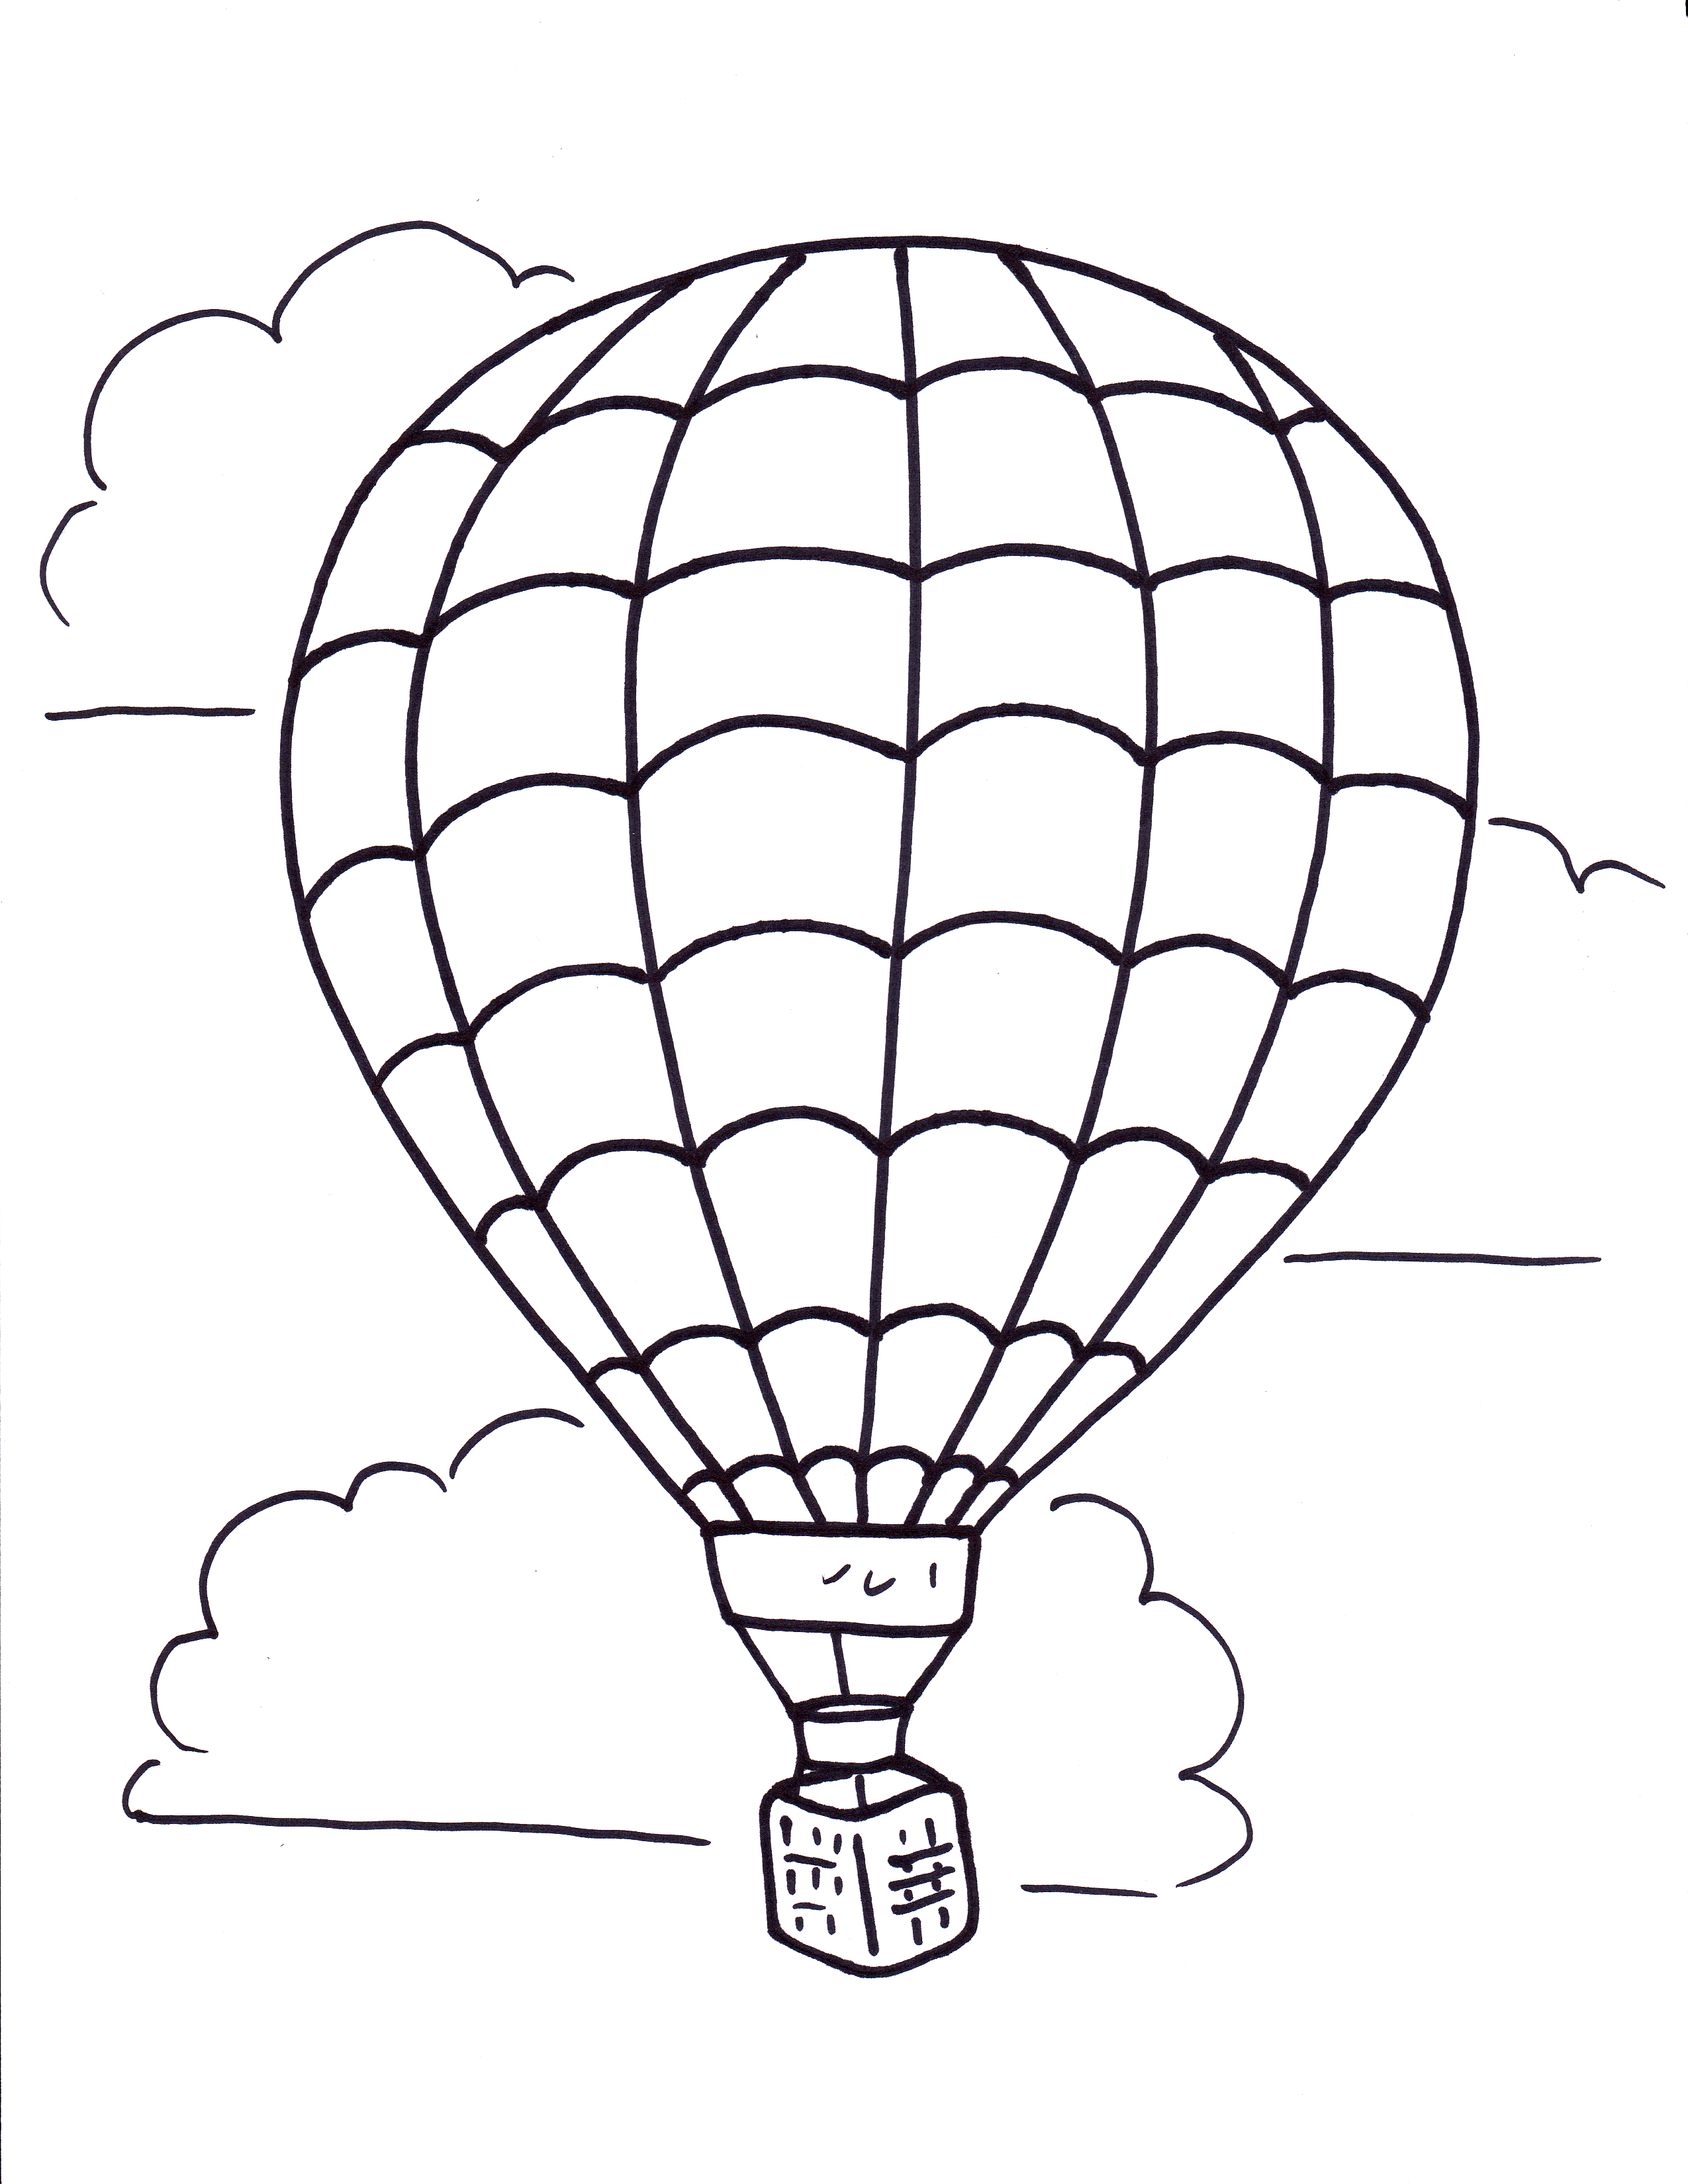 Dessin #16519 - Dessin gratuit de montgolfière a imprimer et colorier